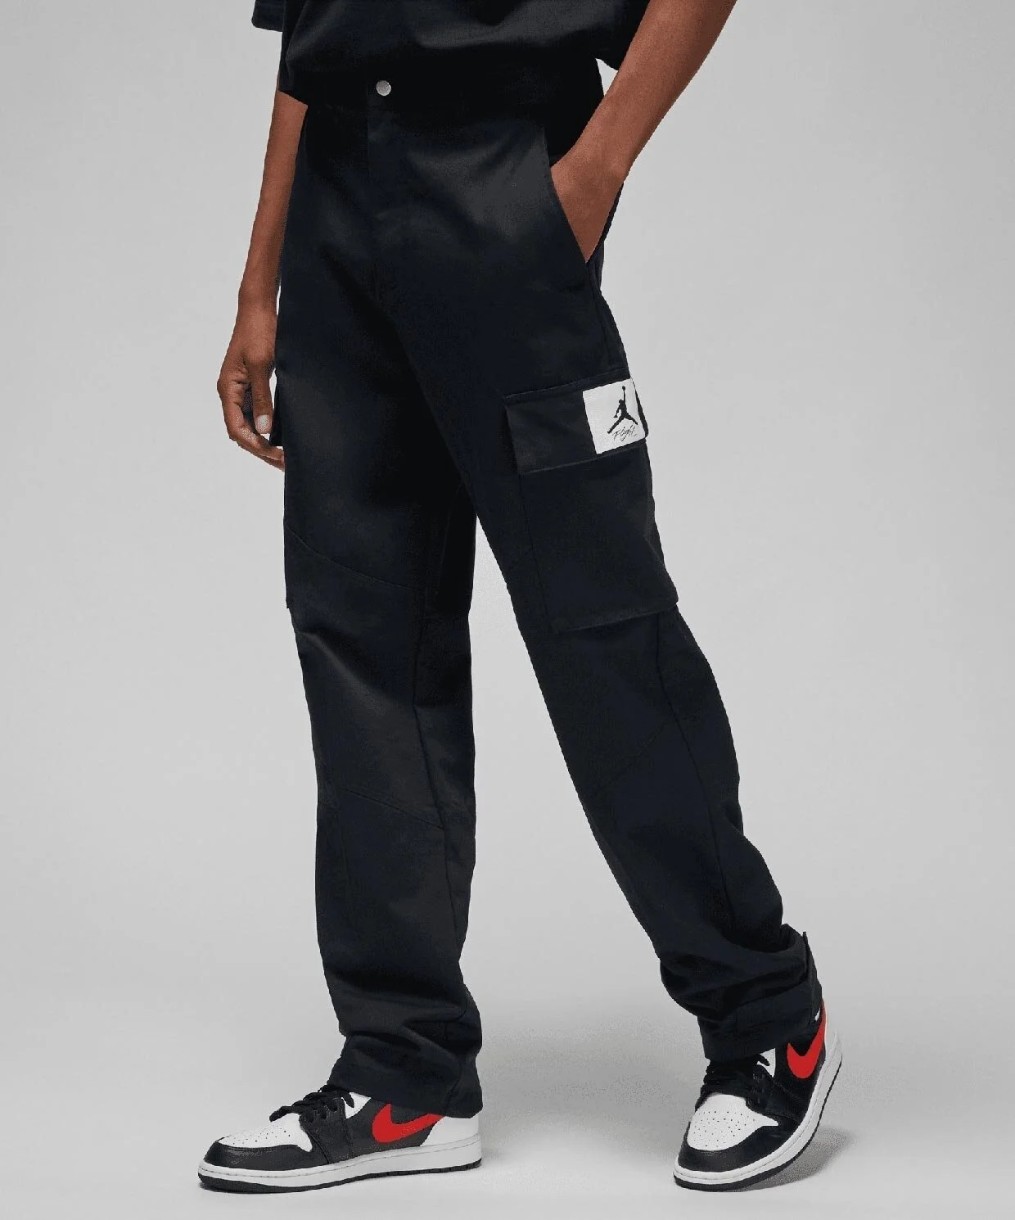 Мужские спортивные штаны Nike Jordan Ess Stmt Utility Pant Black M